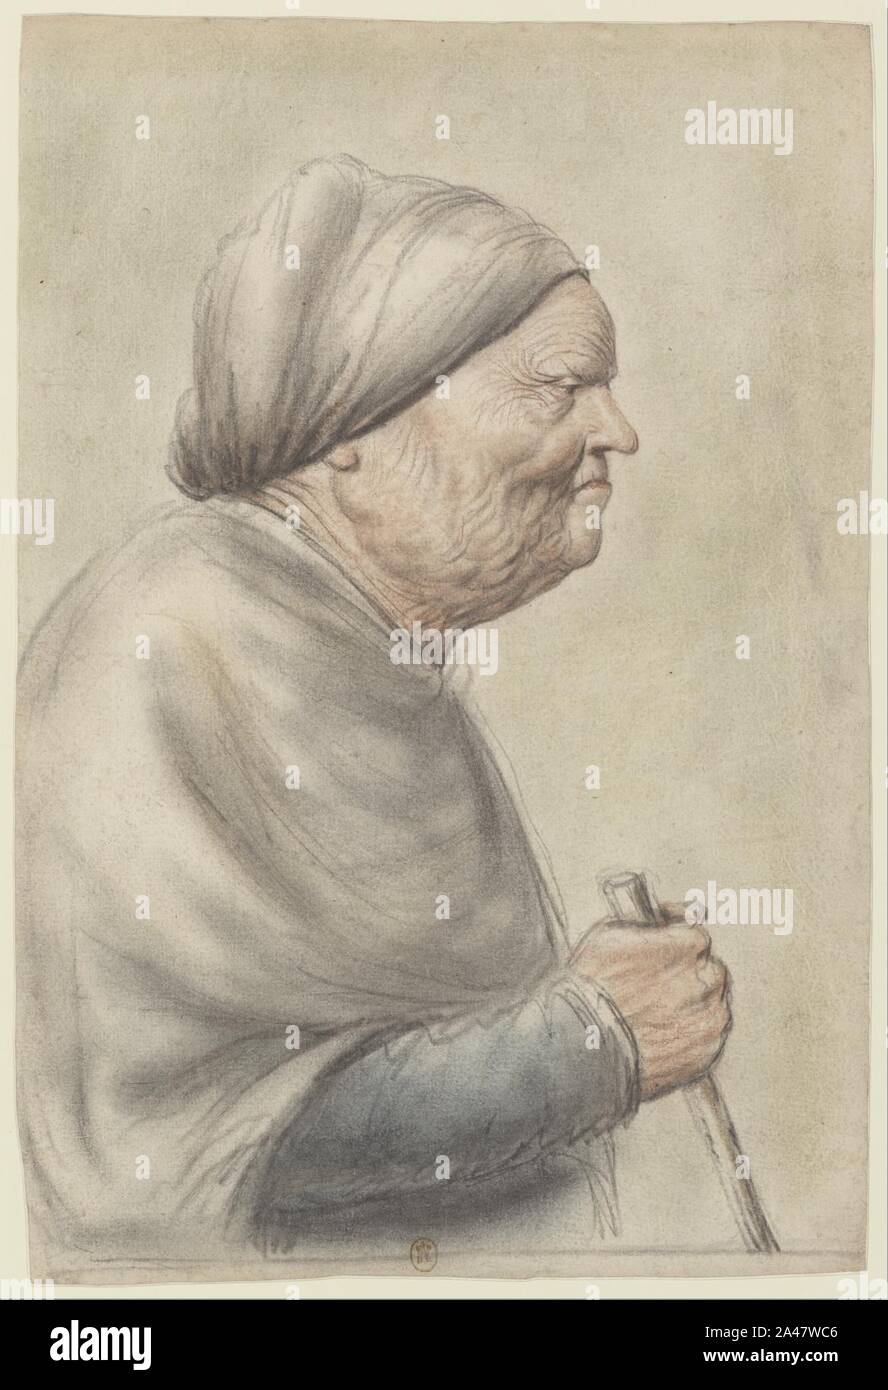 Femme âgée, portant une coiffe blanche, inquilino une canne dans la main droite, vue de profil à droite (Nicolas Lagneau). Foto Stock